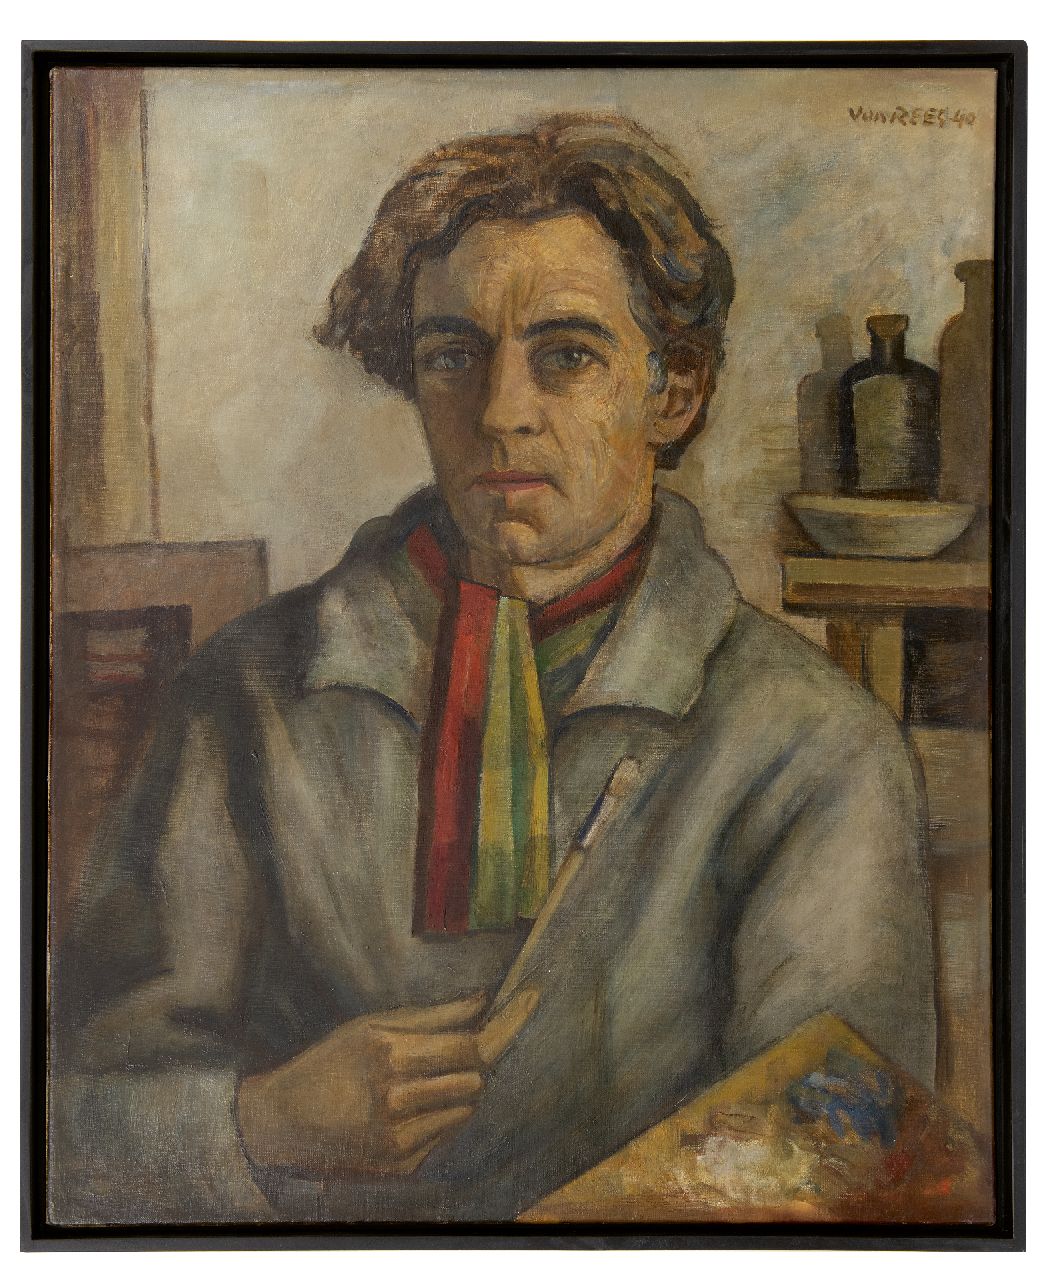 Rees O. van | Otto van Rees | Schilderijen te koop aangeboden | Zelfportret met palet, olieverf op doek 75,2 x 60,0 cm, gesigneerd rechtsboven (dubbel) en gedateerd '40